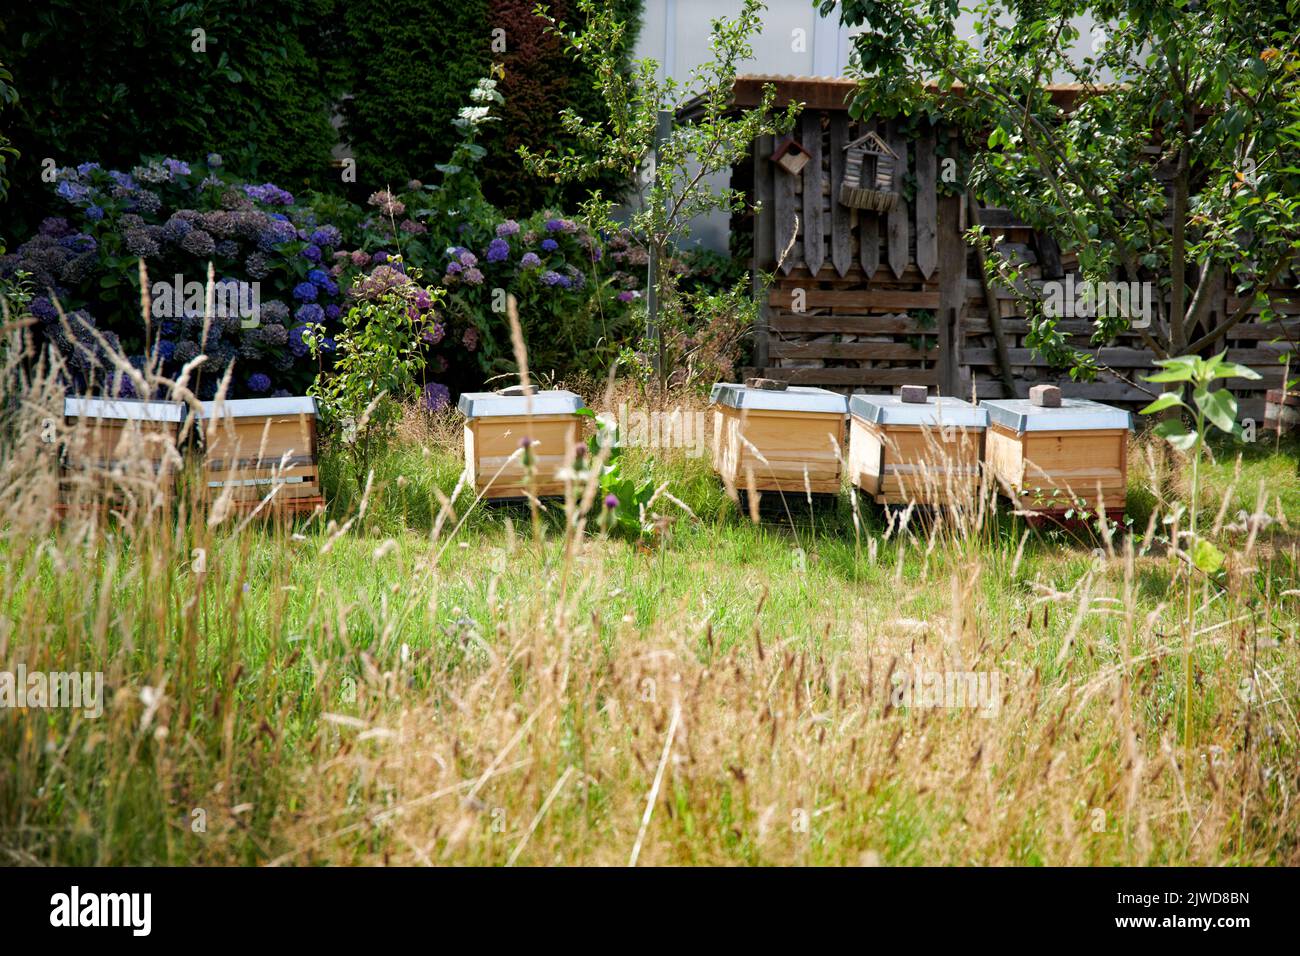 Bienenstoecke stehen auf einem Gartengelaende in einem Wohngebiet im hohen Gras. Stock Photo